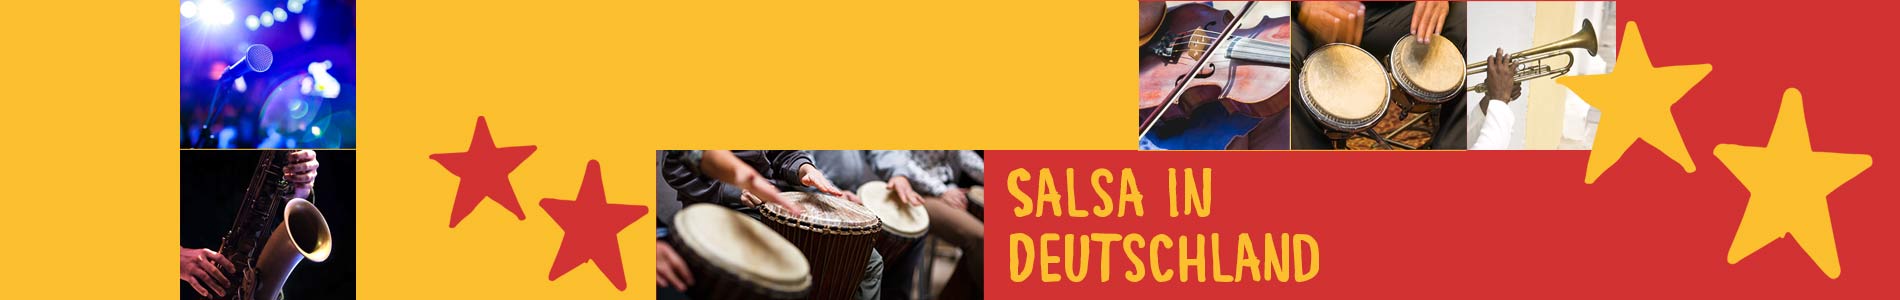 Salsa in Deizisau – Salsa lernen und tanzen, Tanzkurse, Partys, Veranstaltungen